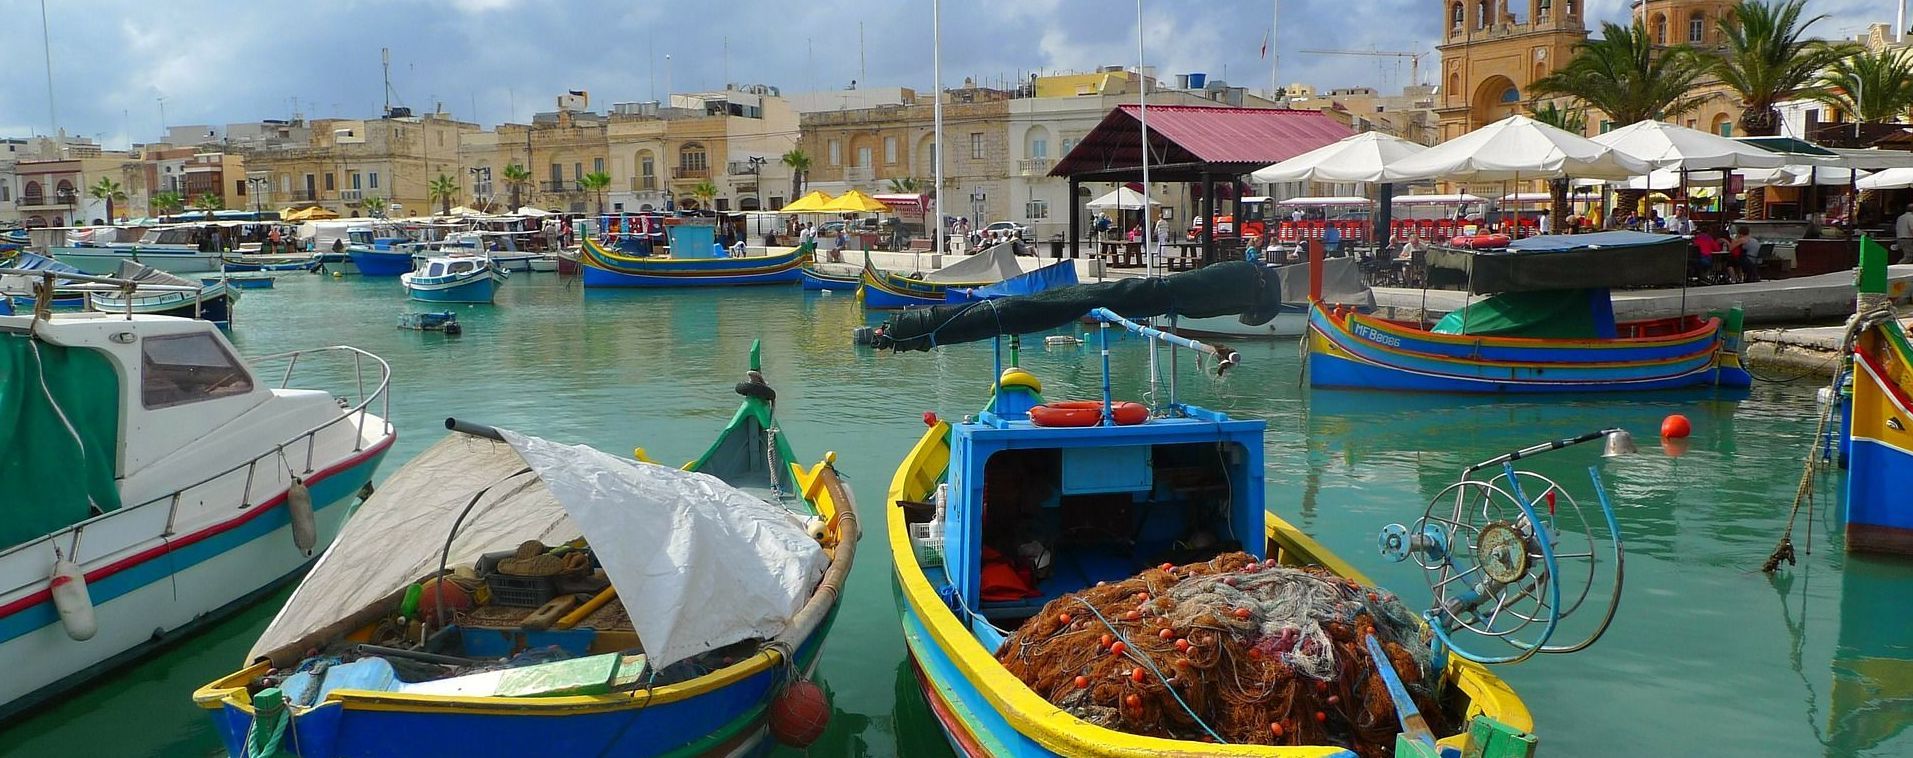 Мальта запретила въезд туристам из Украины